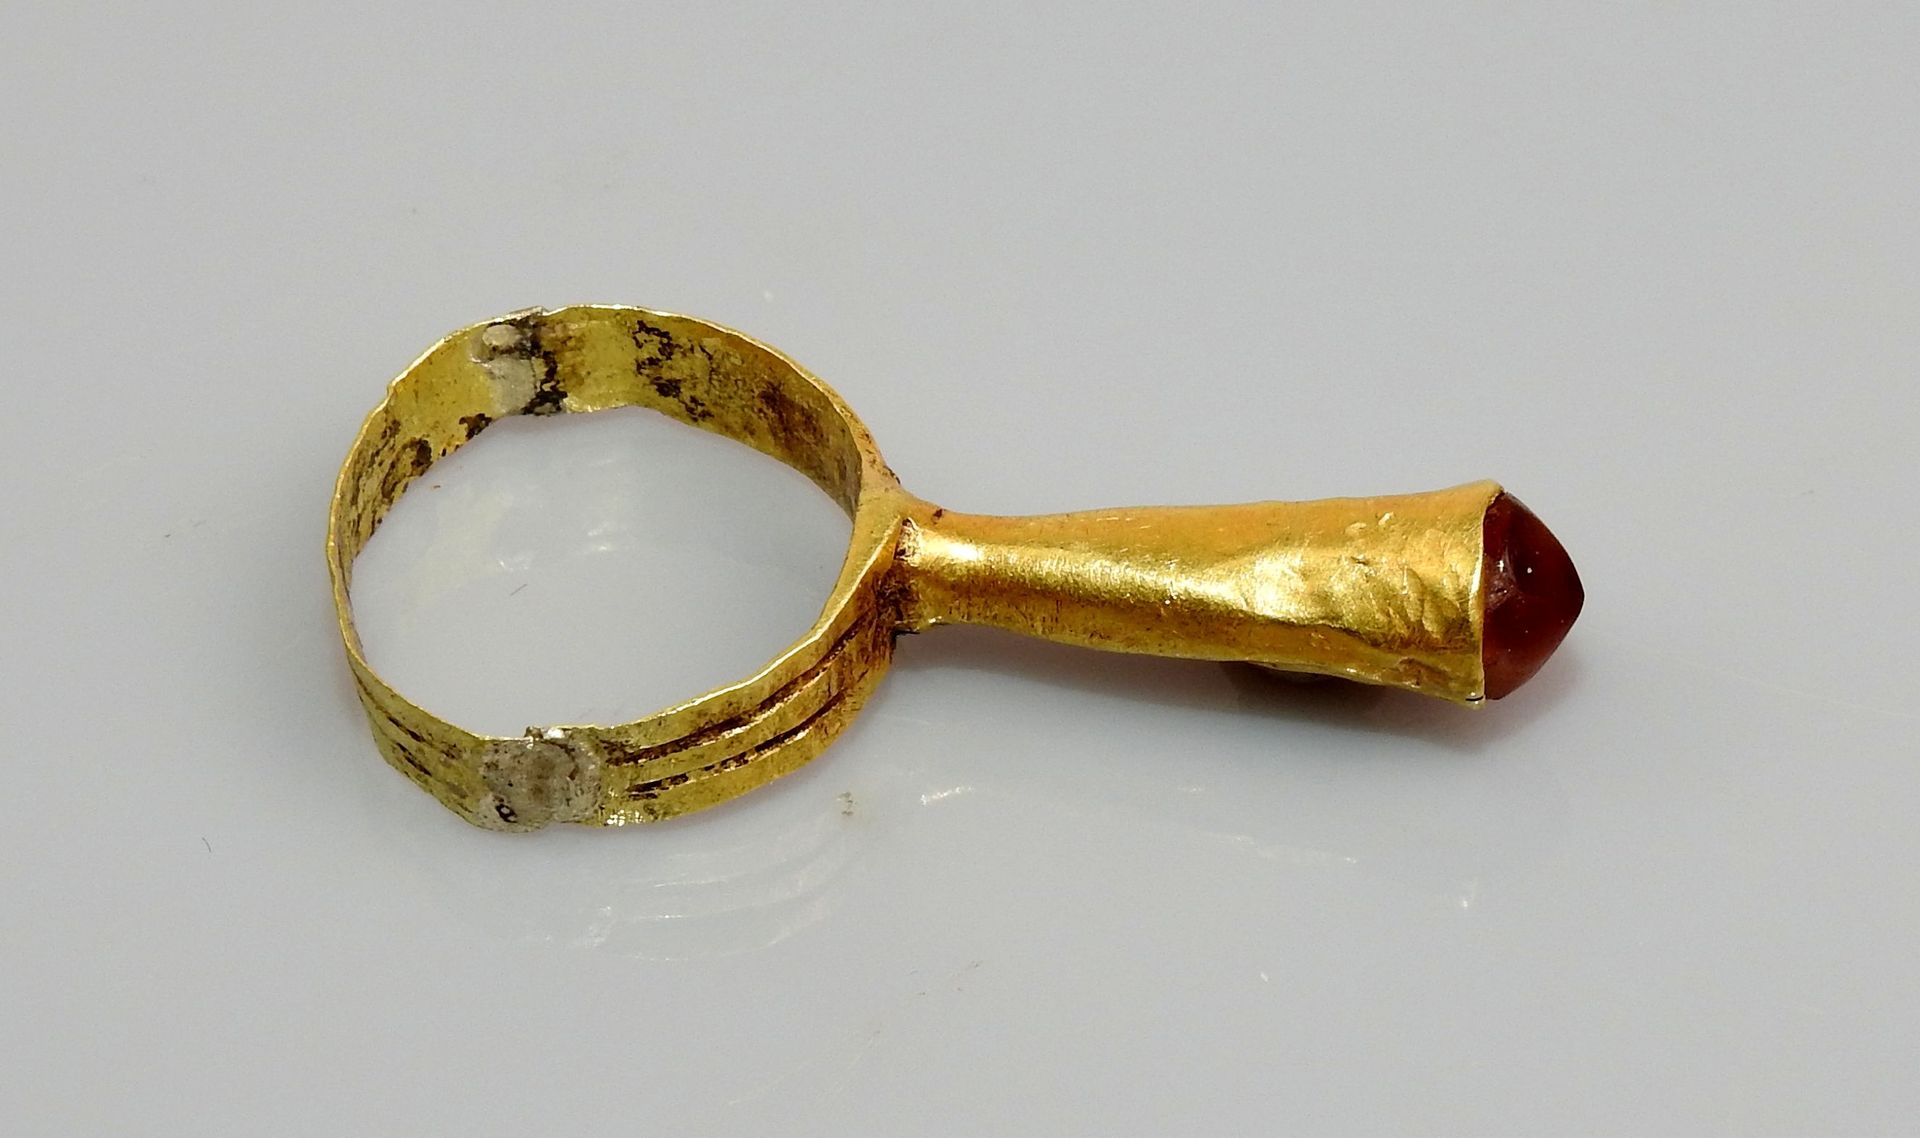 Null Röhrenförmiger Ring mit einem Stein am Ende

Gold- und Achatring wahrschein&hellip;